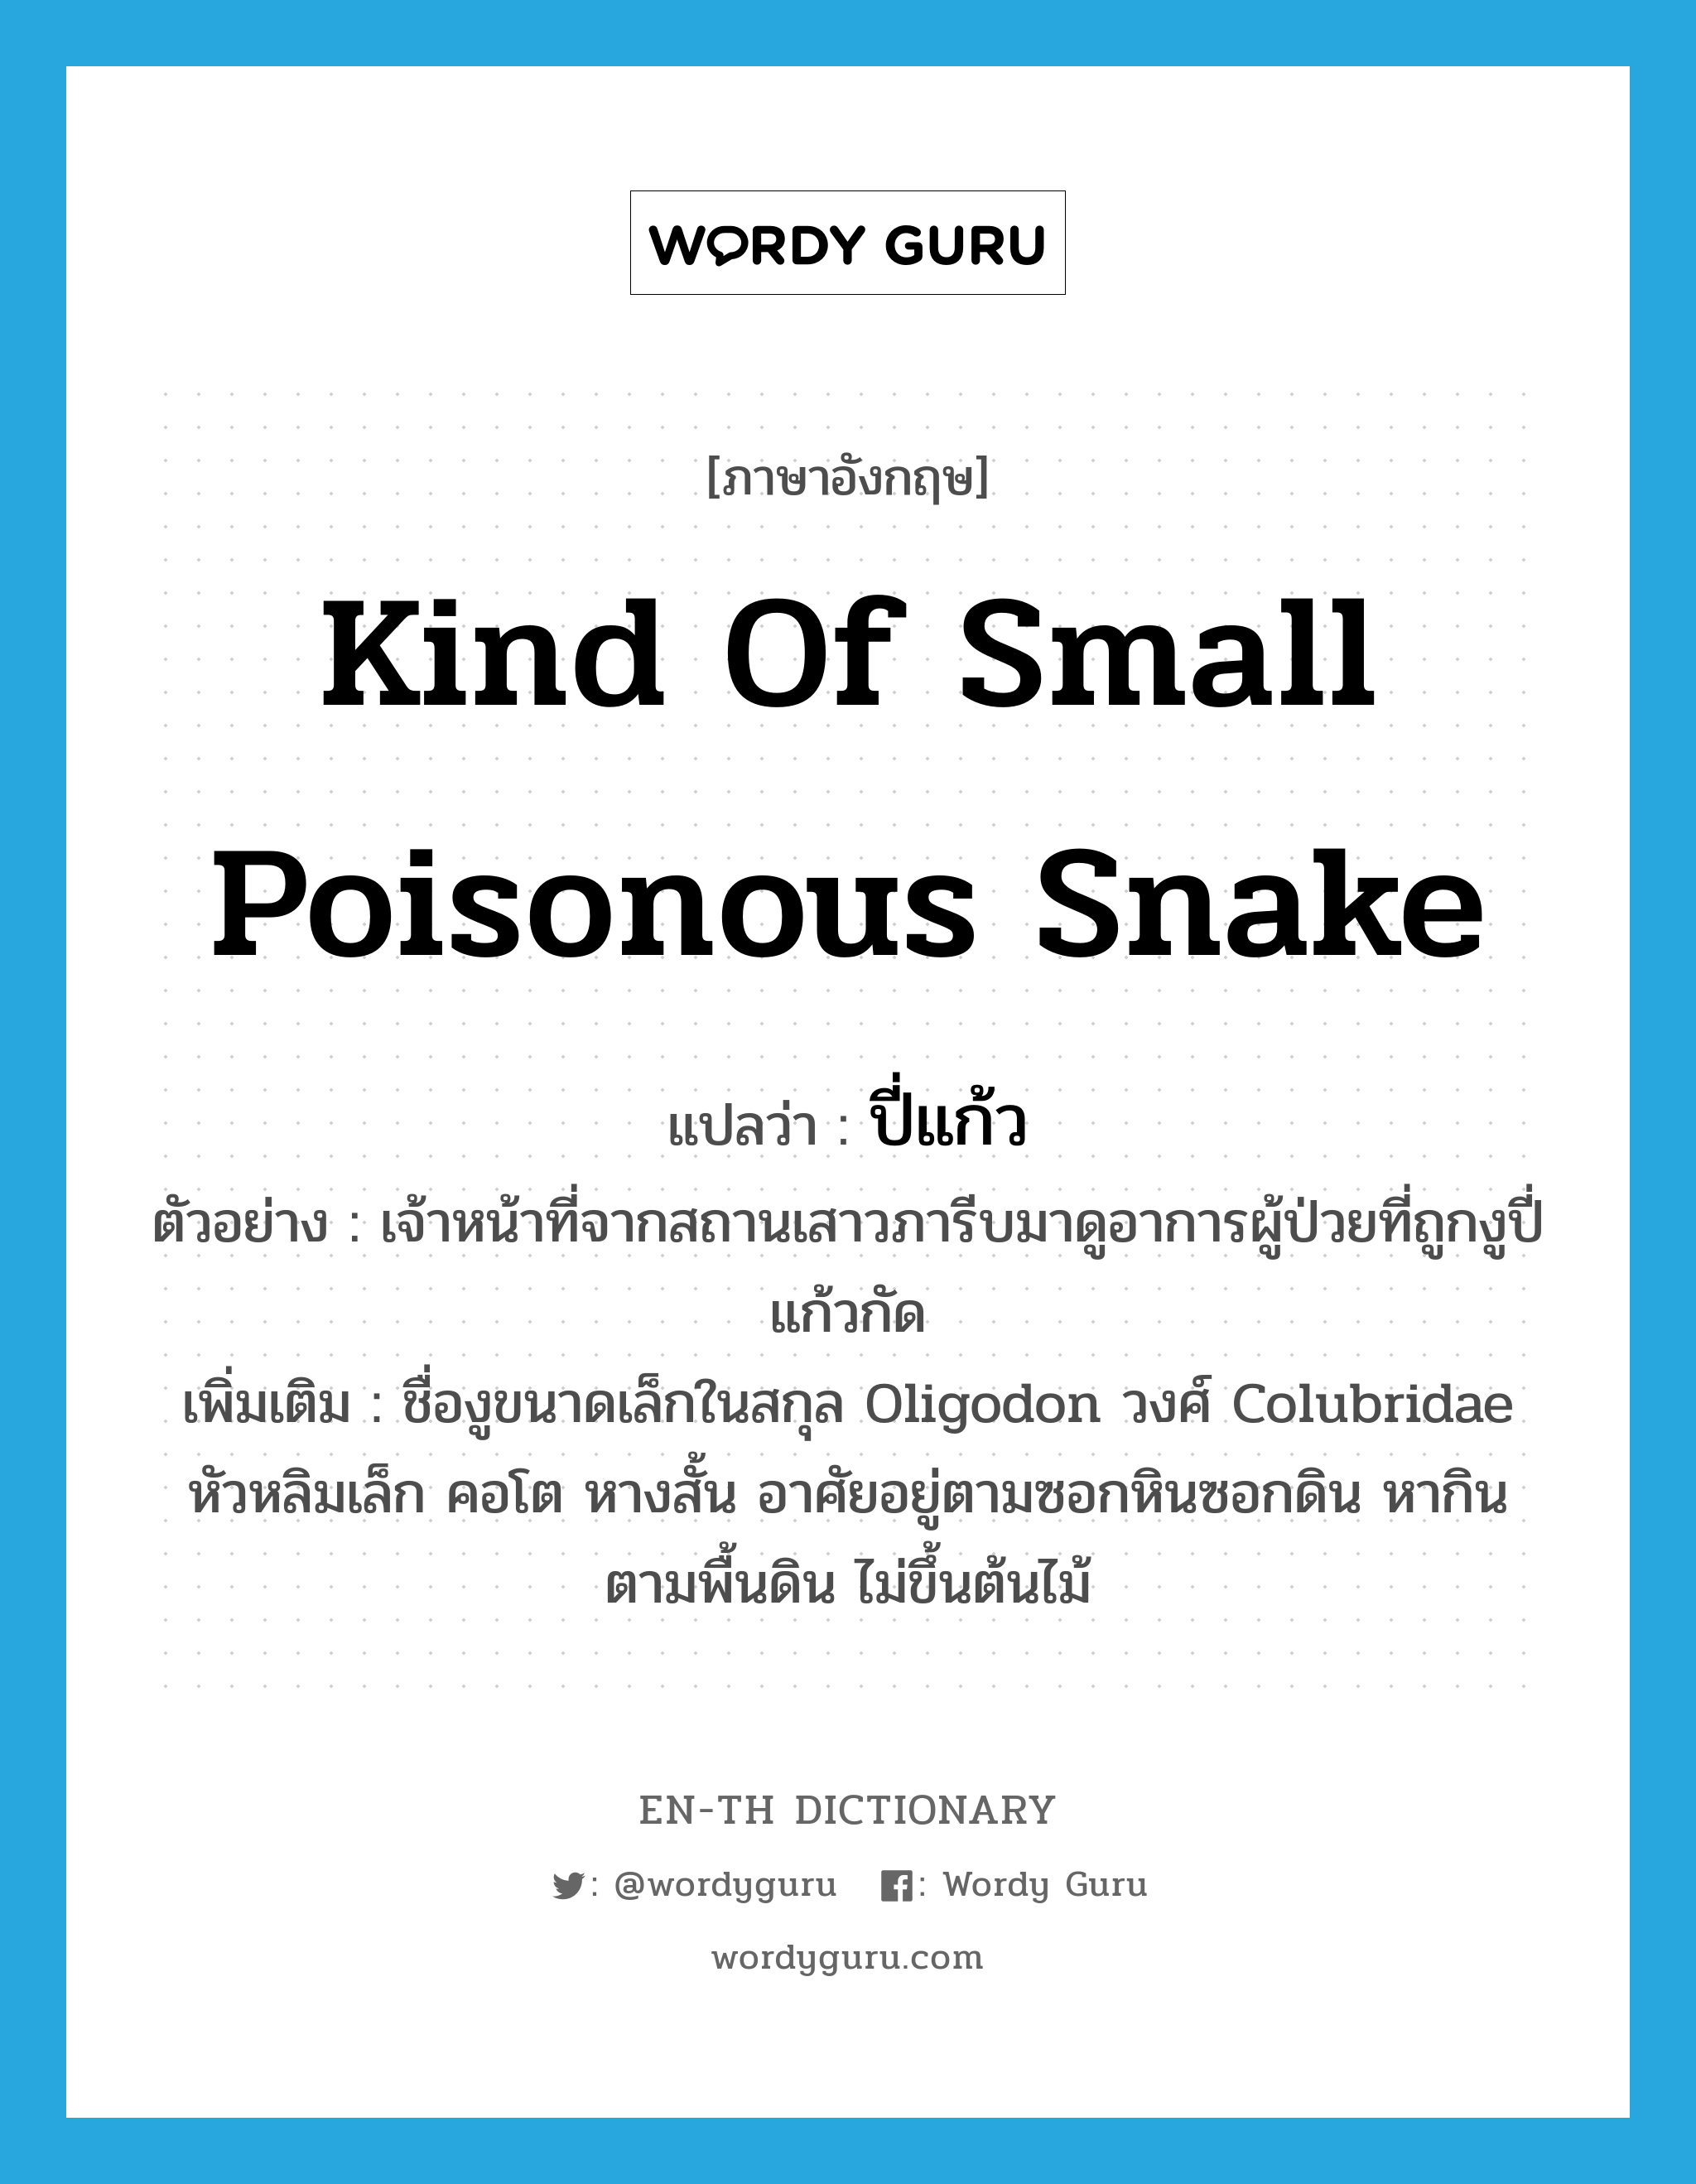 ปี่แก้ว ภาษาอังกฤษ?, คำศัพท์ภาษาอังกฤษ ปี่แก้ว แปลว่า kind of small poisonous snake ประเภท N ตัวอย่าง เจ้าหน้าที่จากสถานเสาวภารีบมาดูอาการผู้ป่วยที่ถูกงูปี่แก้วกัด เพิ่มเติม ชื่องูขนาดเล็กในสกุล Oligodon วงศ์ Colubridae หัวหลิมเล็ก คอโต หางสั้น อาศัยอยู่ตามซอกหินซอกดิน หากินตามพื้นดิน ไม่ขึ้นต้นไม้ หมวด N